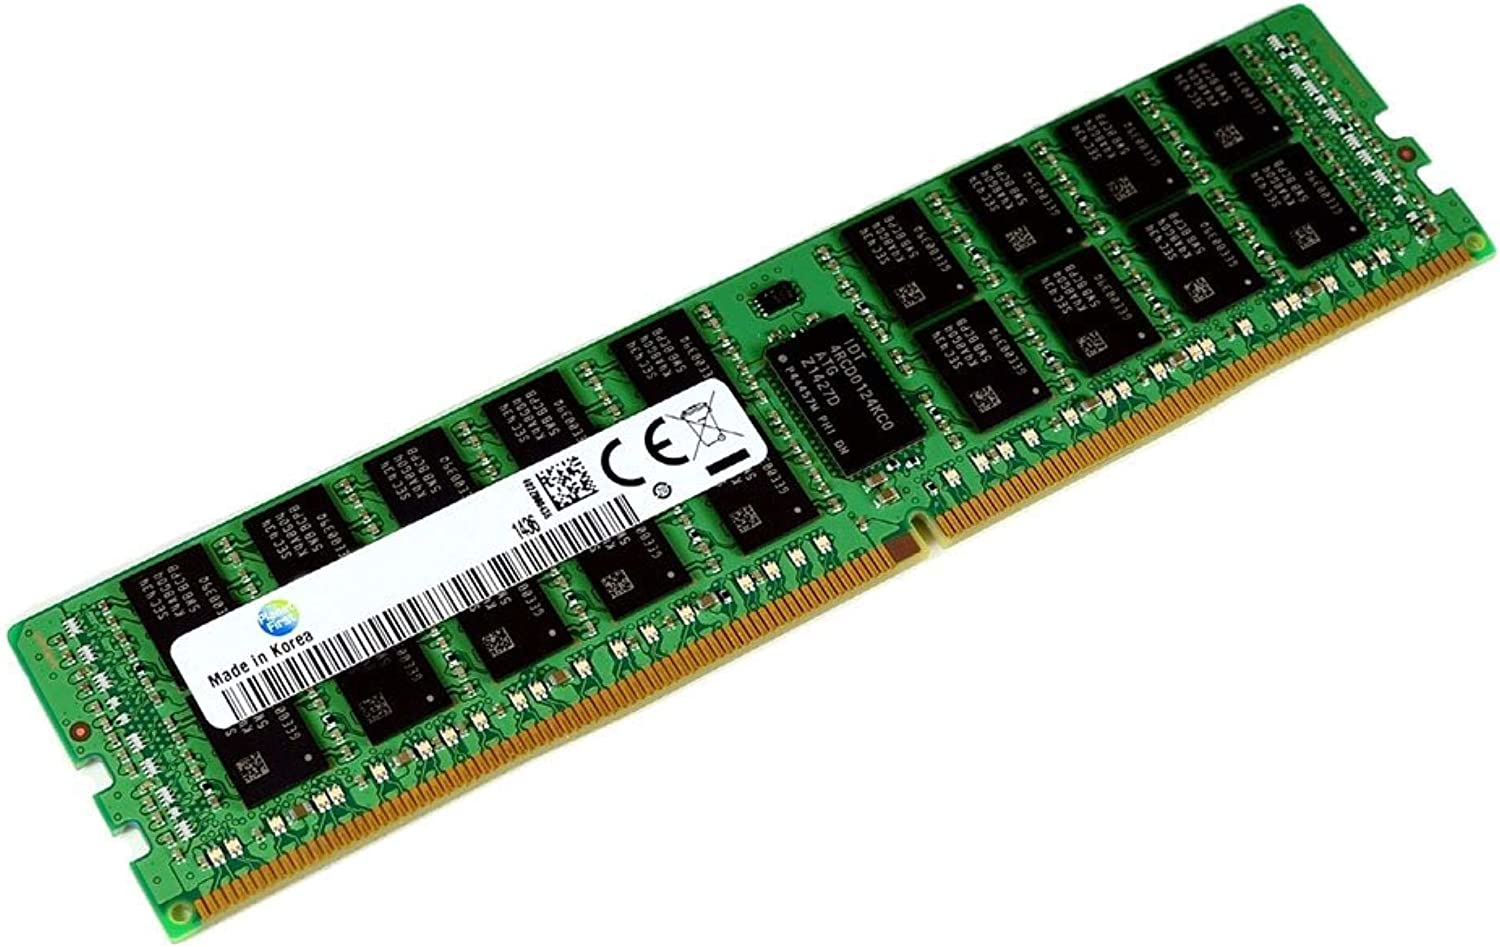 HMA84GR7MFR4N-TF Hynix 32GB DDR4 2133MHz 2Rx4 1.2V RDIMM Memory Refurbished with 1 year warranty